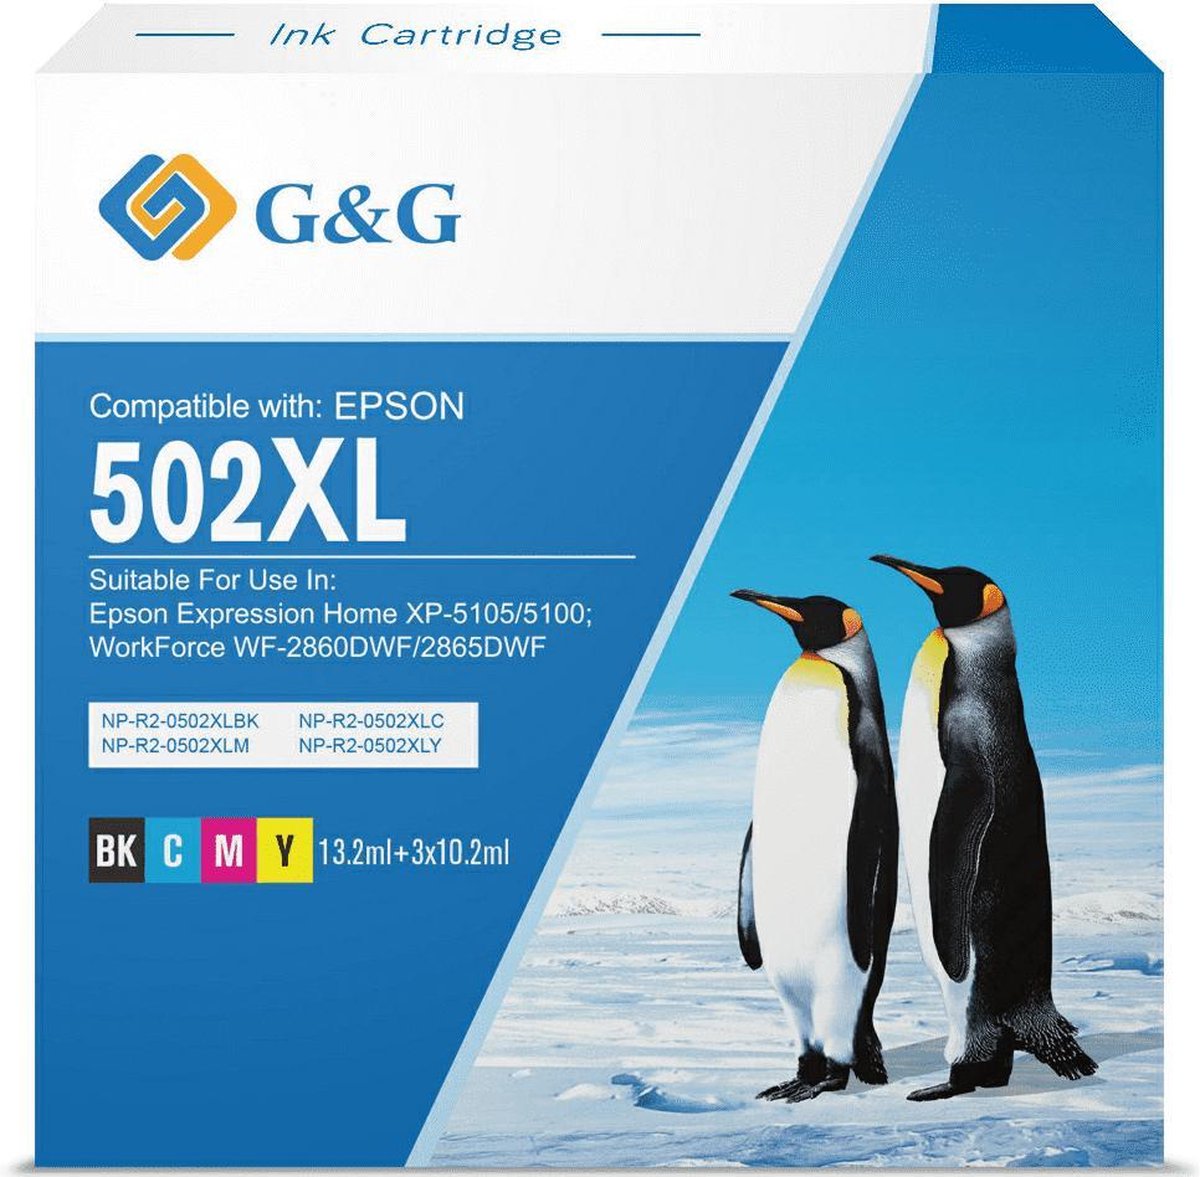 G&G 502XL Cartridges Combo Pack